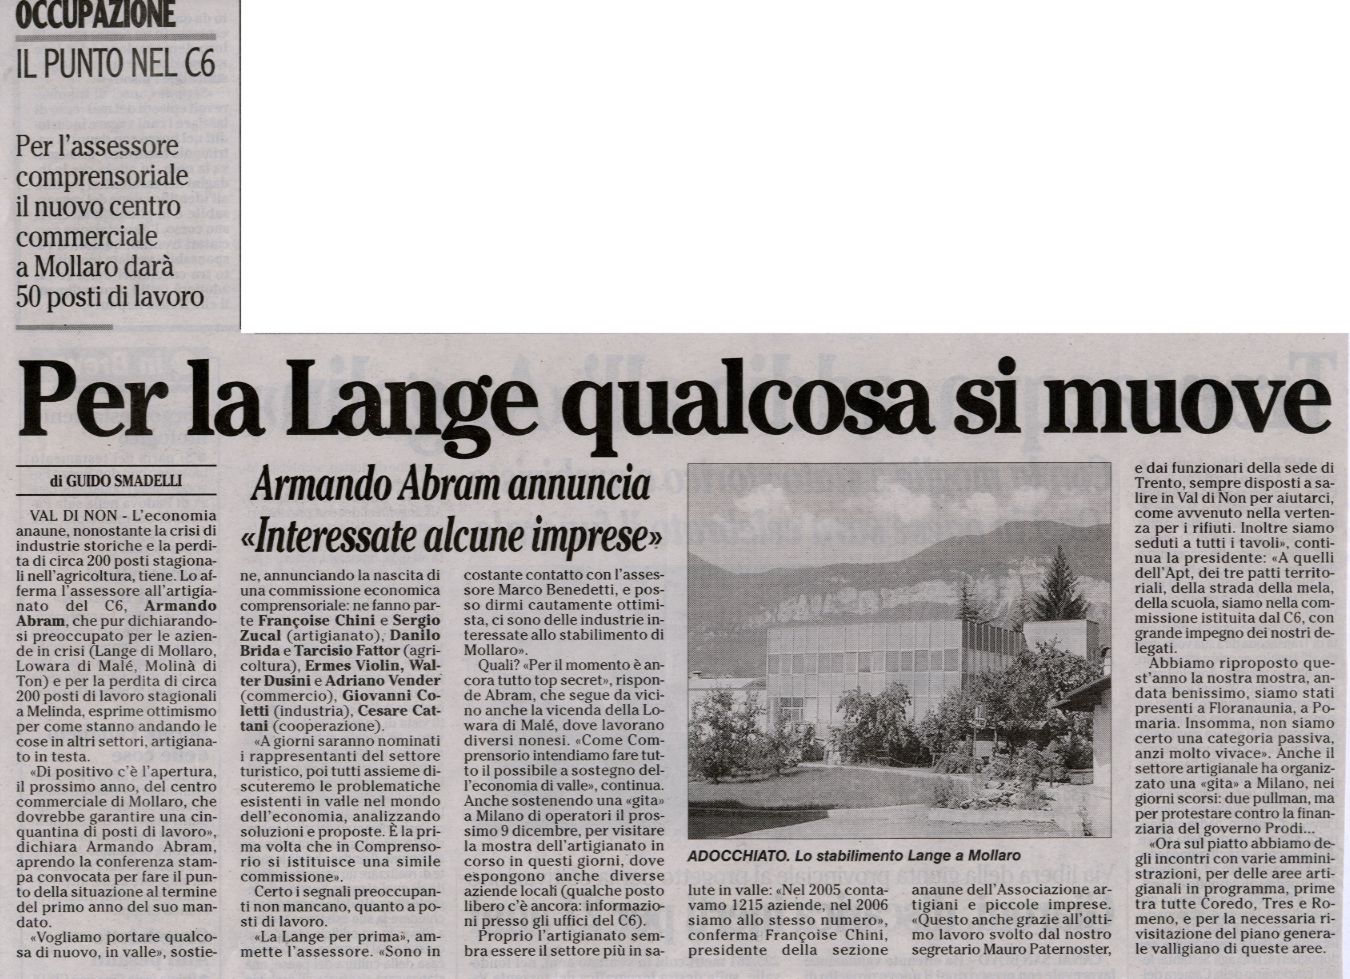 2006-12-05 00:00:00 - Per la Lange qualcosa si muove - Smadelli Guido - Adige